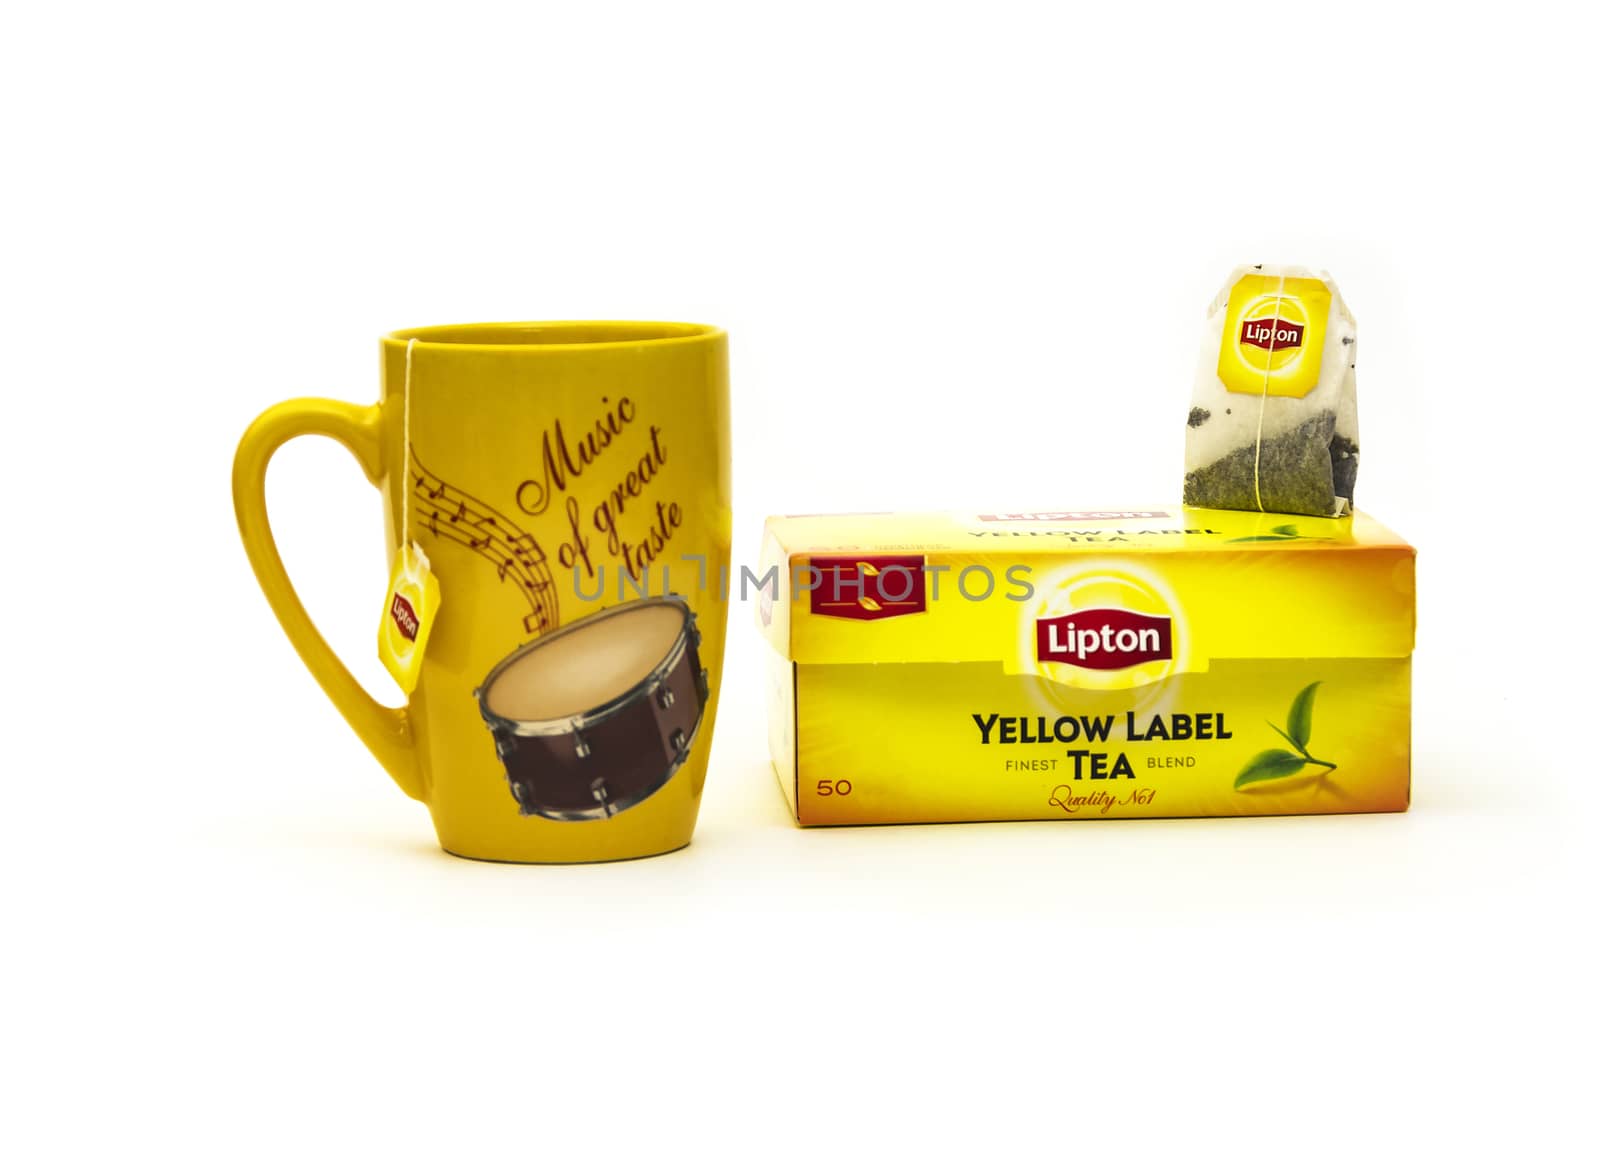 Yellow mug and tea bag packing with Lipton